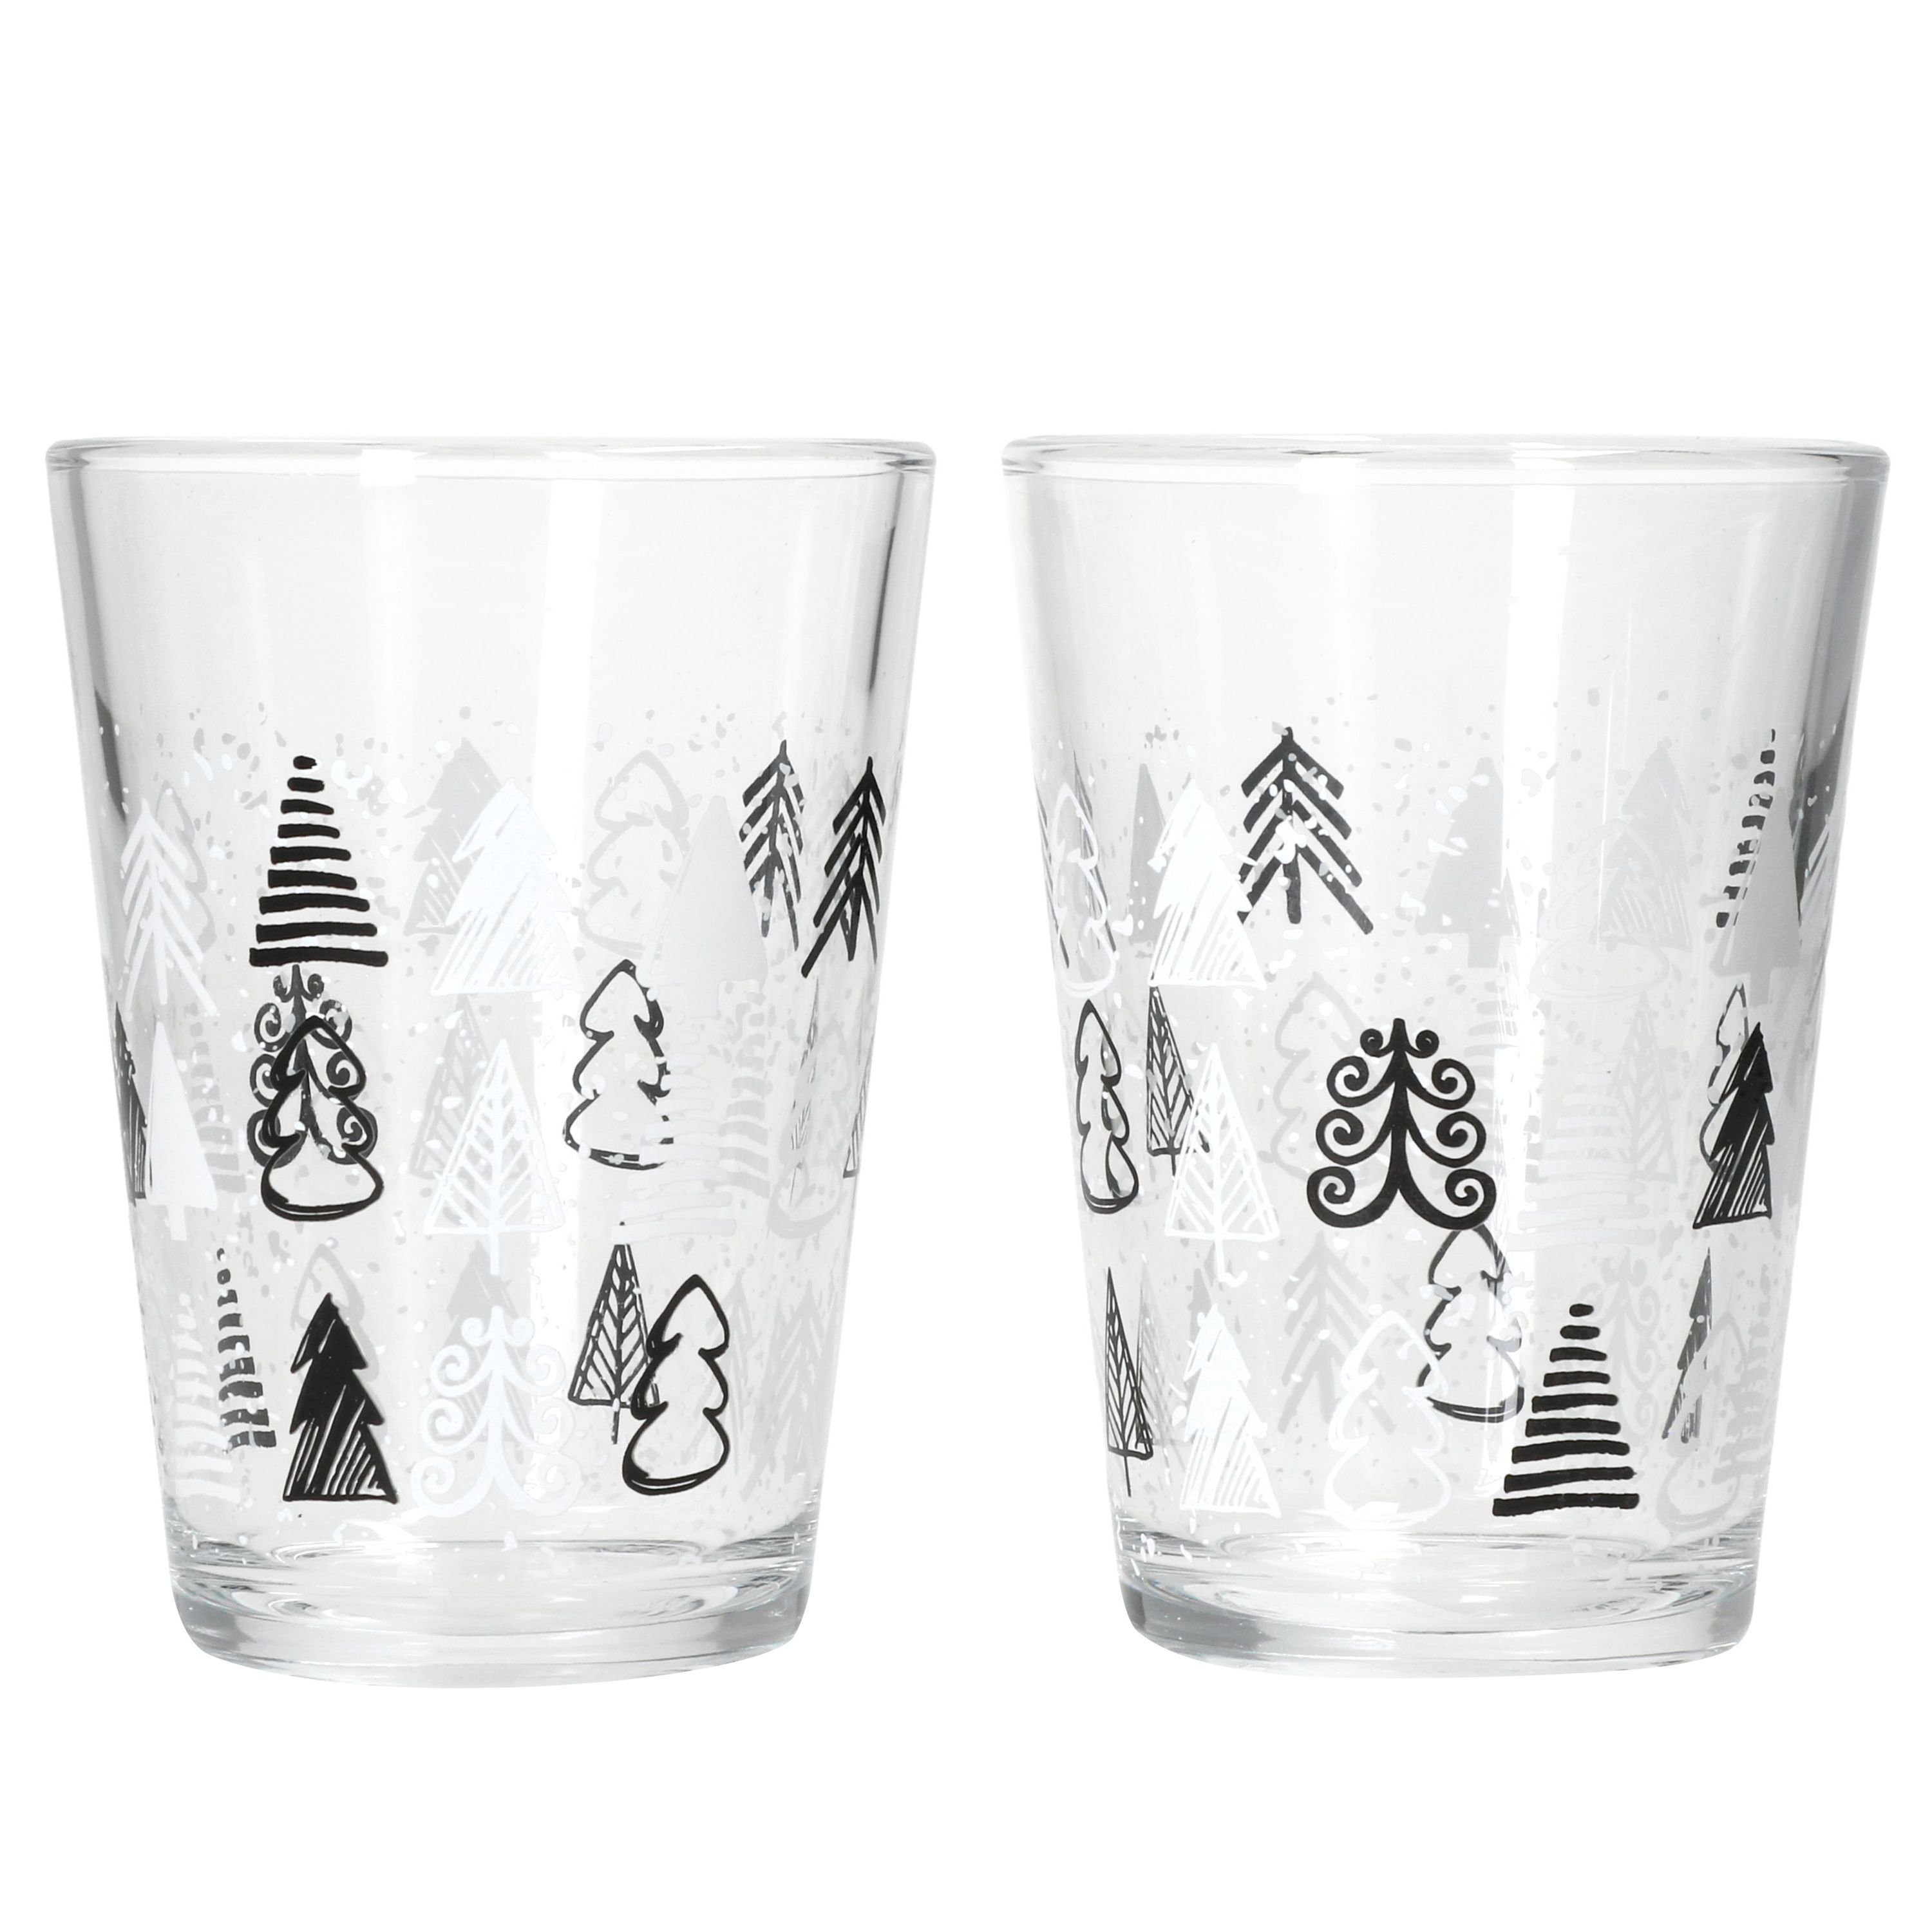 MamboCat Glas Ritzenhoff Tree Grey Winter 2x Glühwein-Gläser 240ml H11cm, Glas